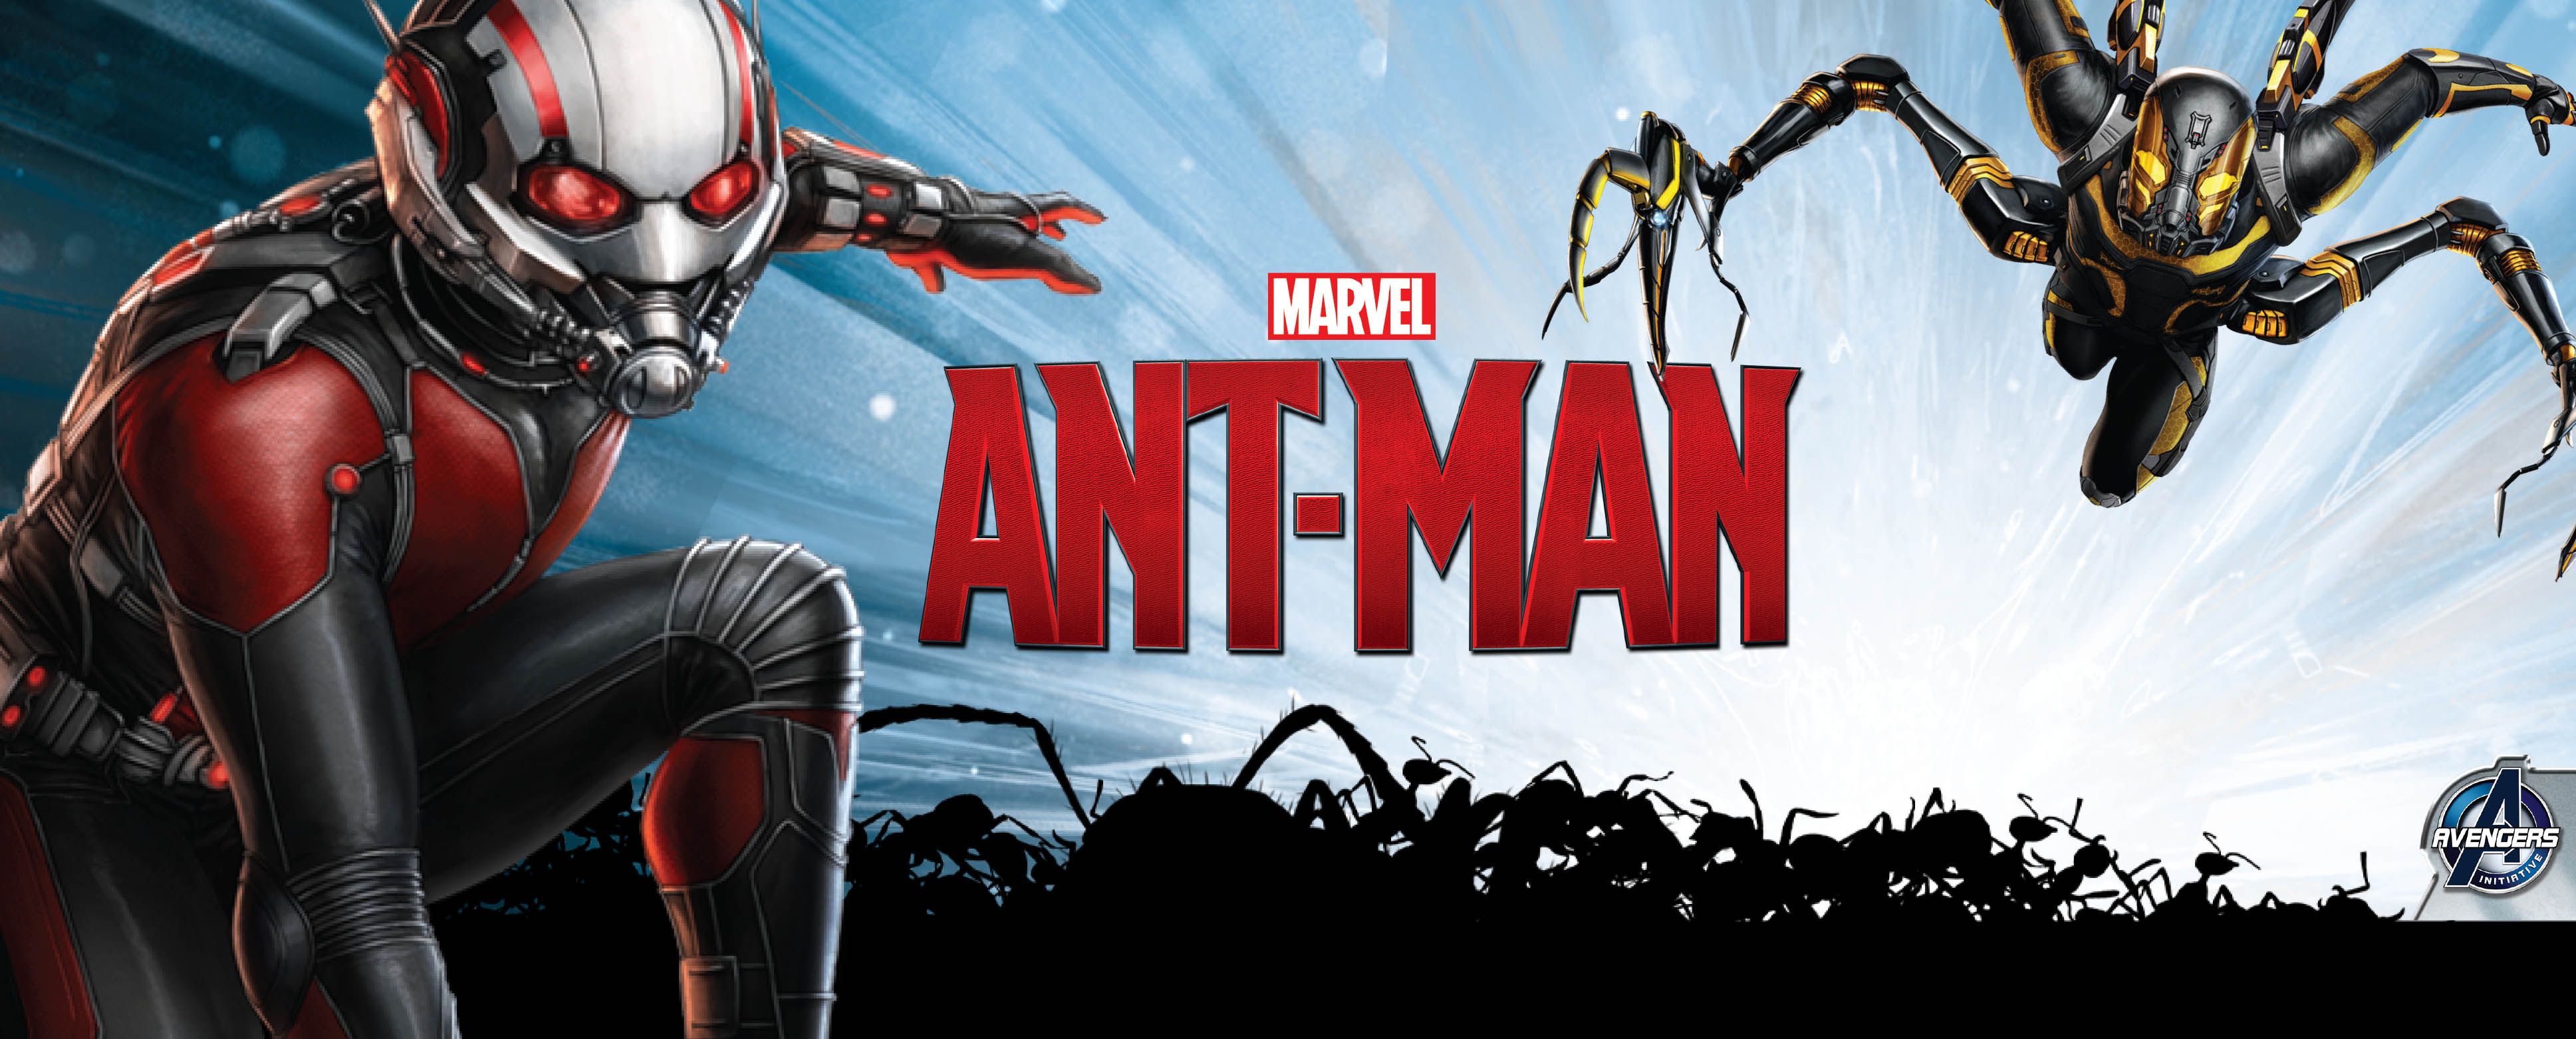 Marvel's Ant-Man Poster